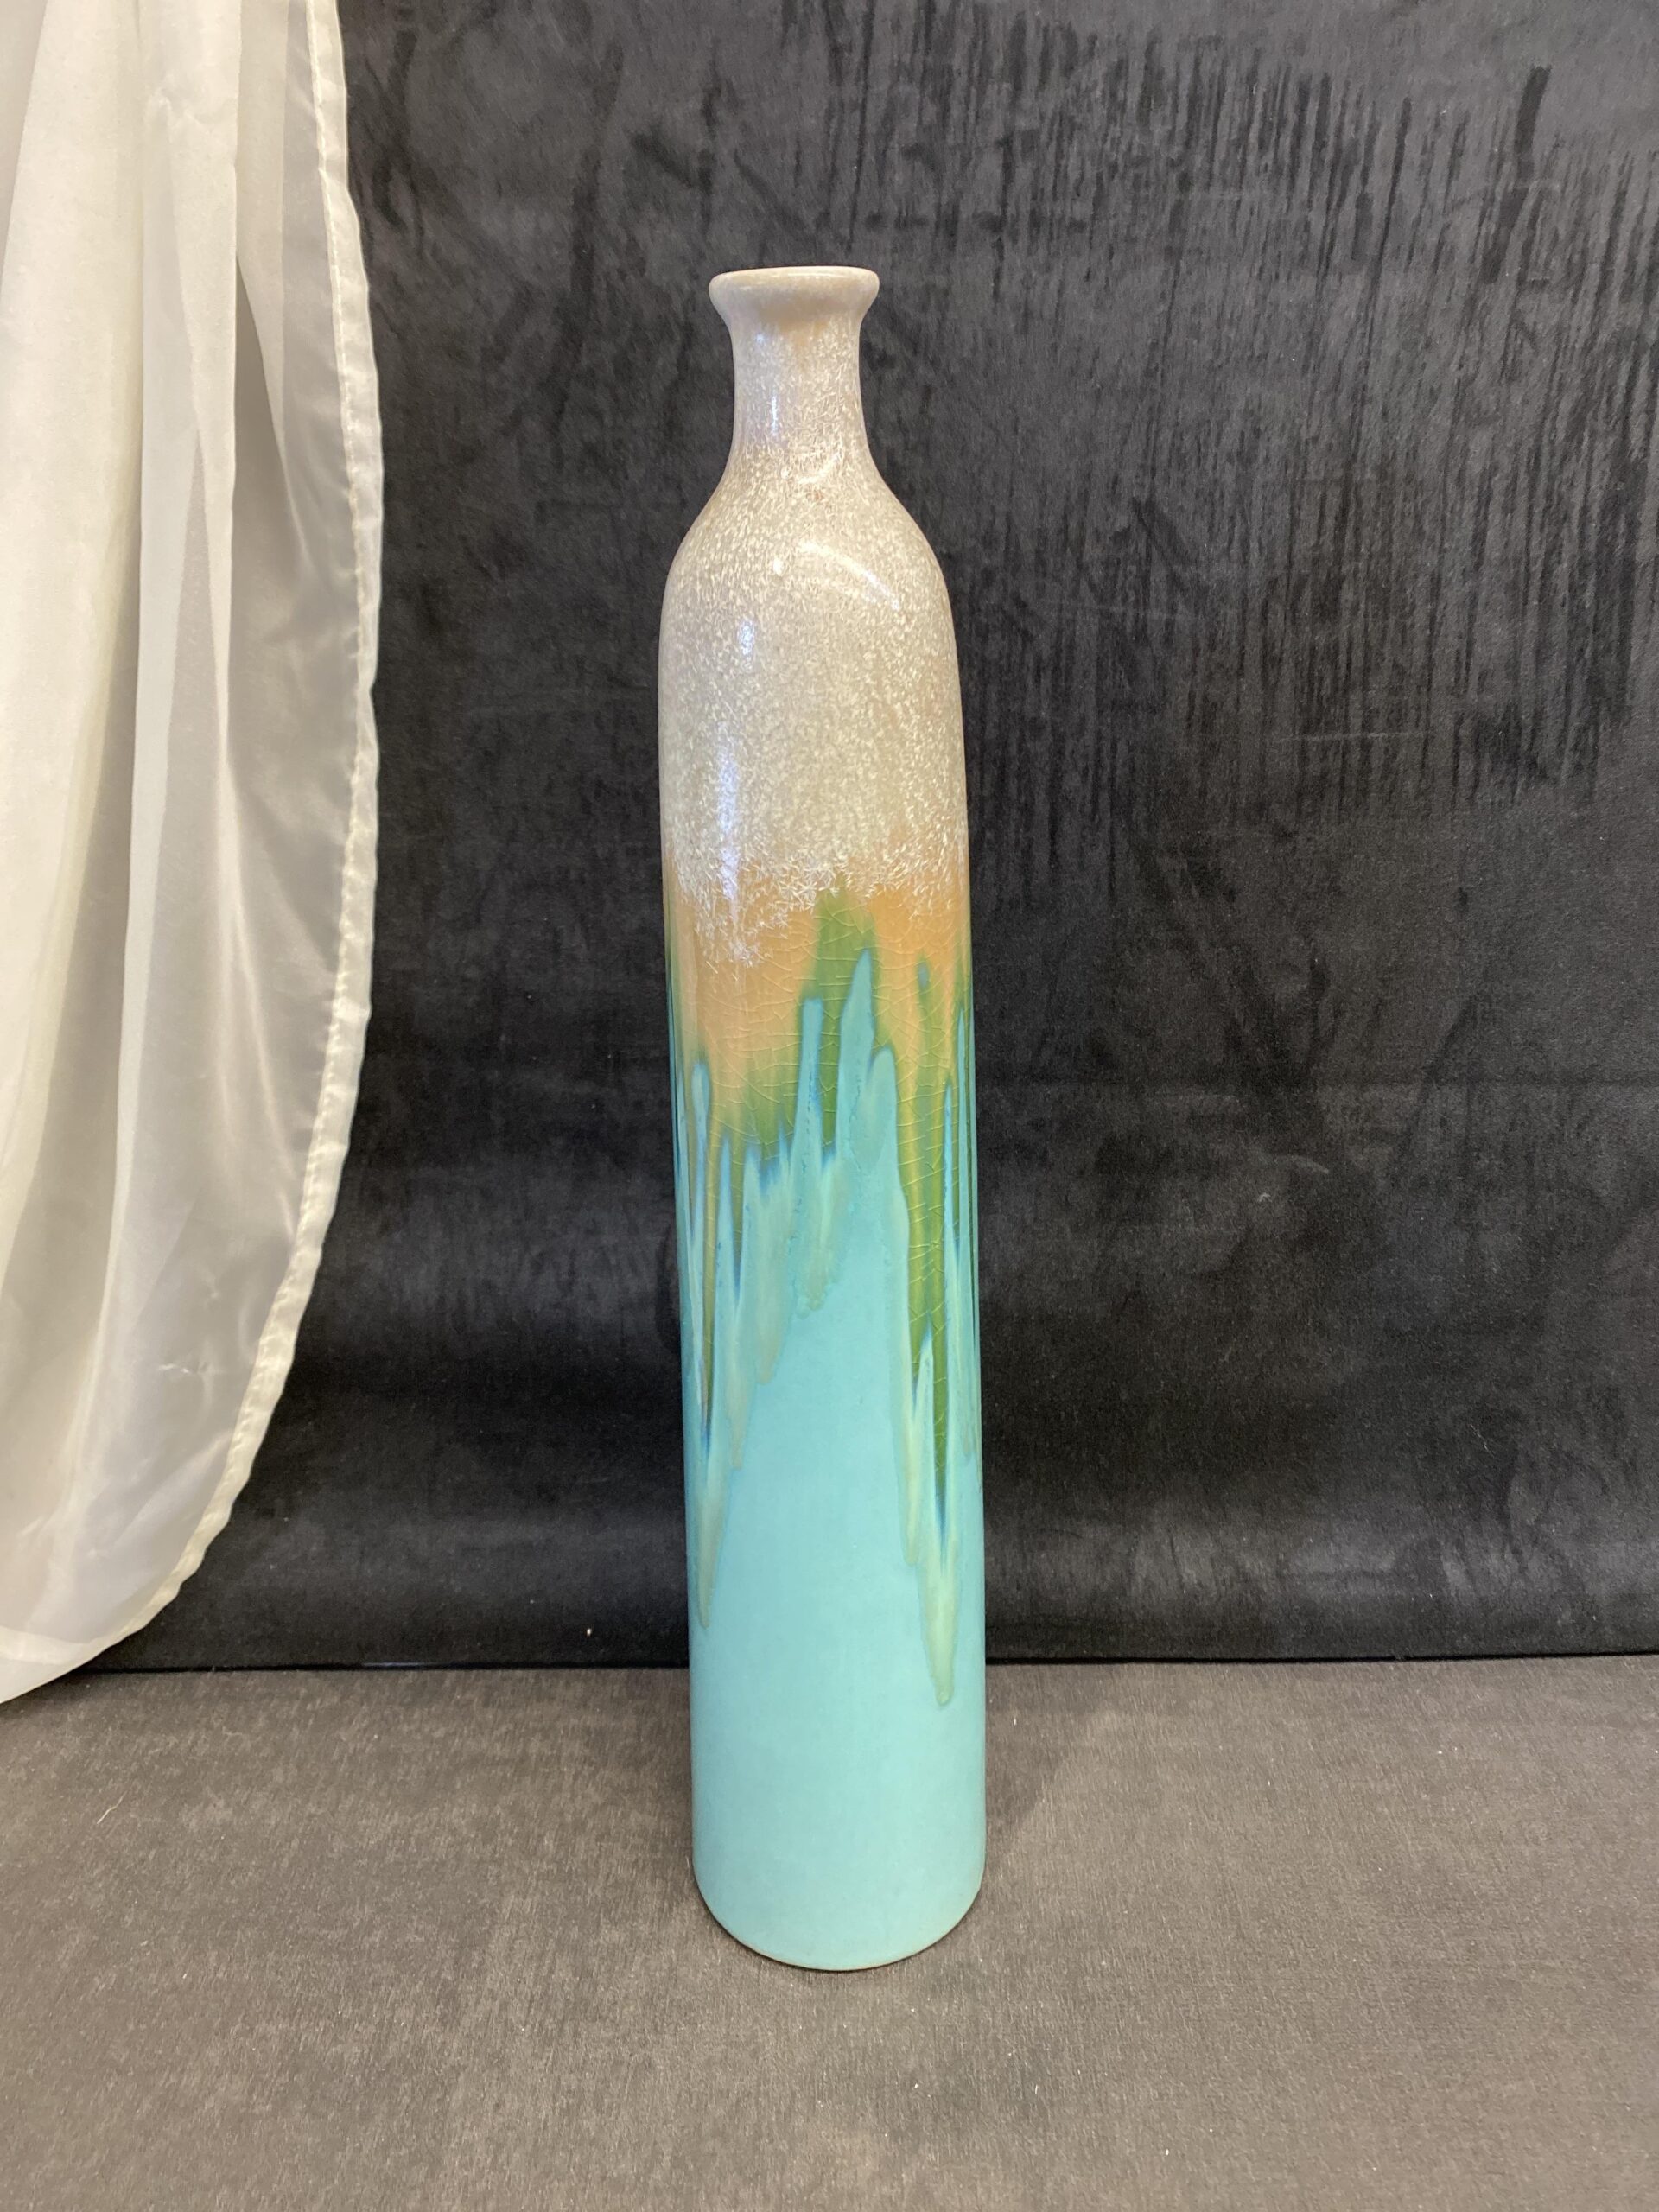 3 Hands Ceramic Vase – Turquoise